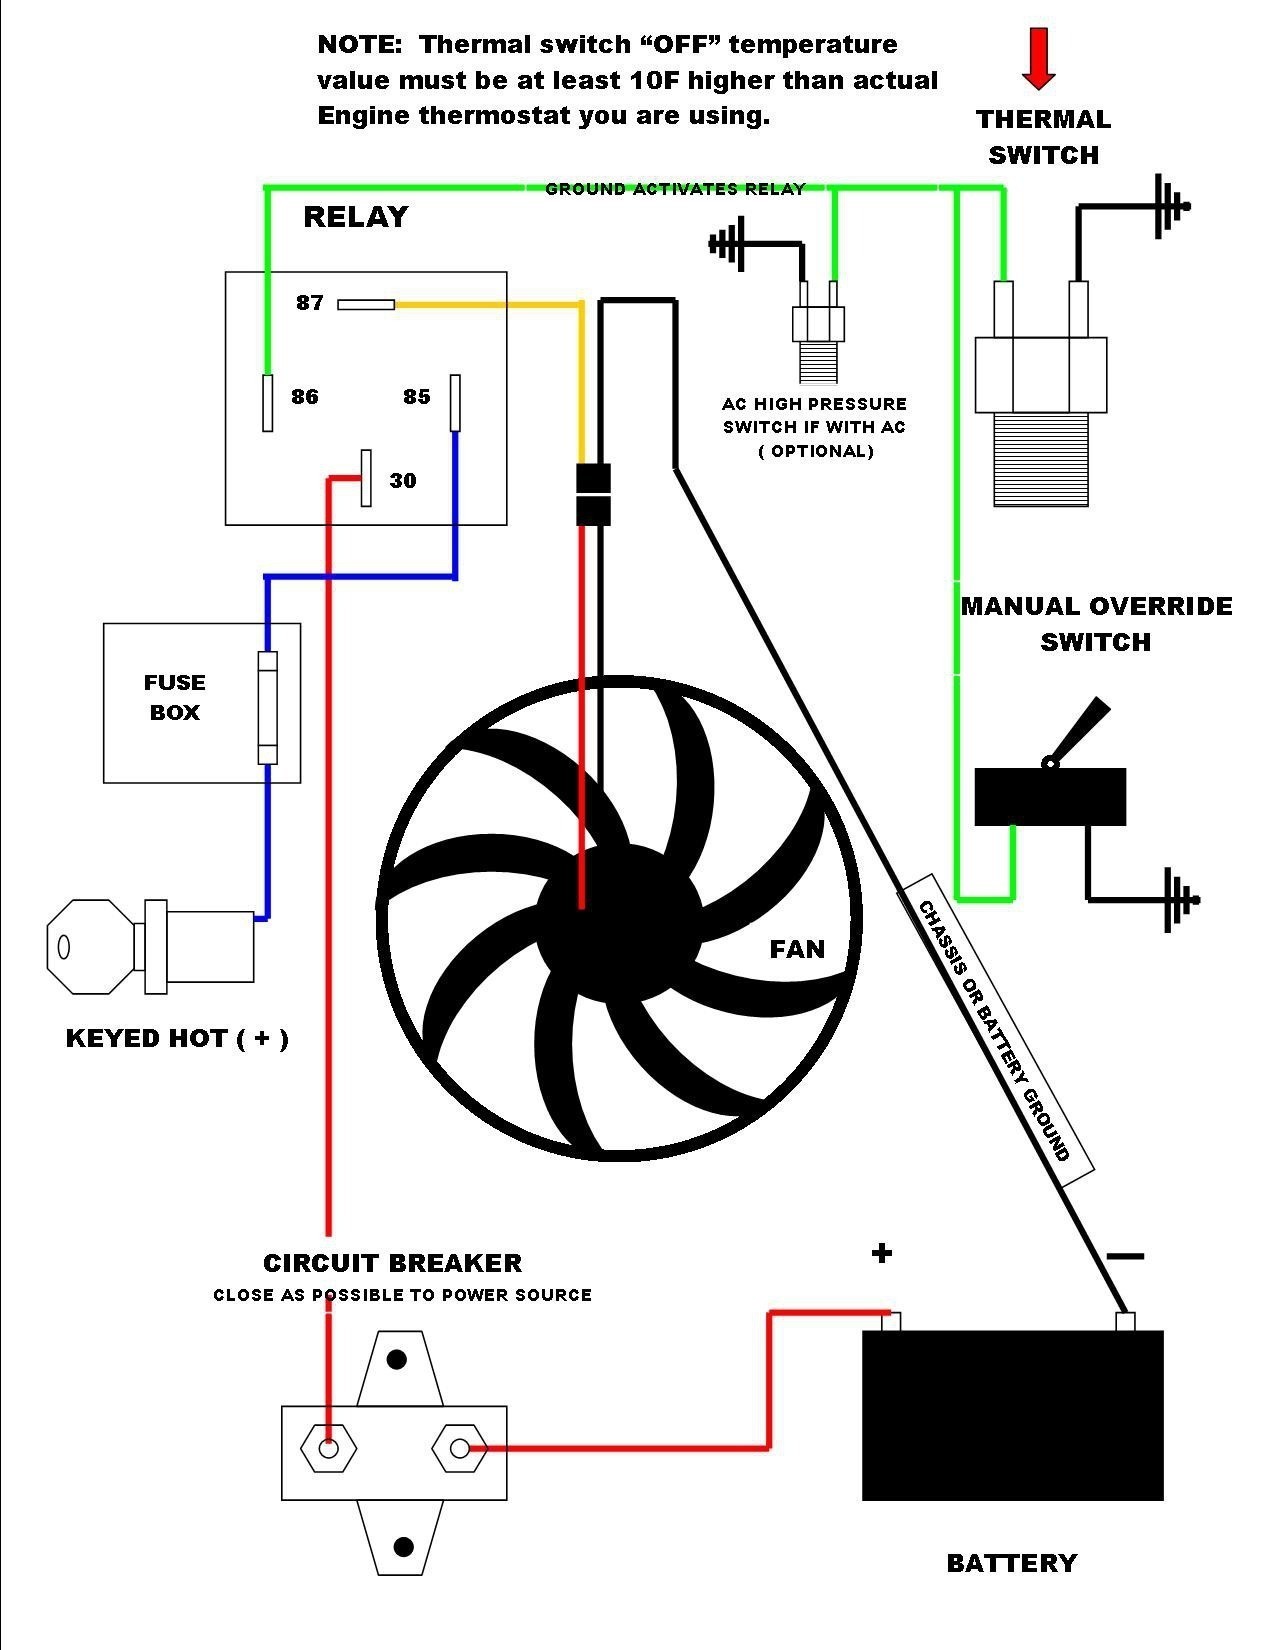 Wiring Diagram Electric Fan Motor Fresh 3 Speed Electric Fan Motor Wiring Diagram Save Electric Fan